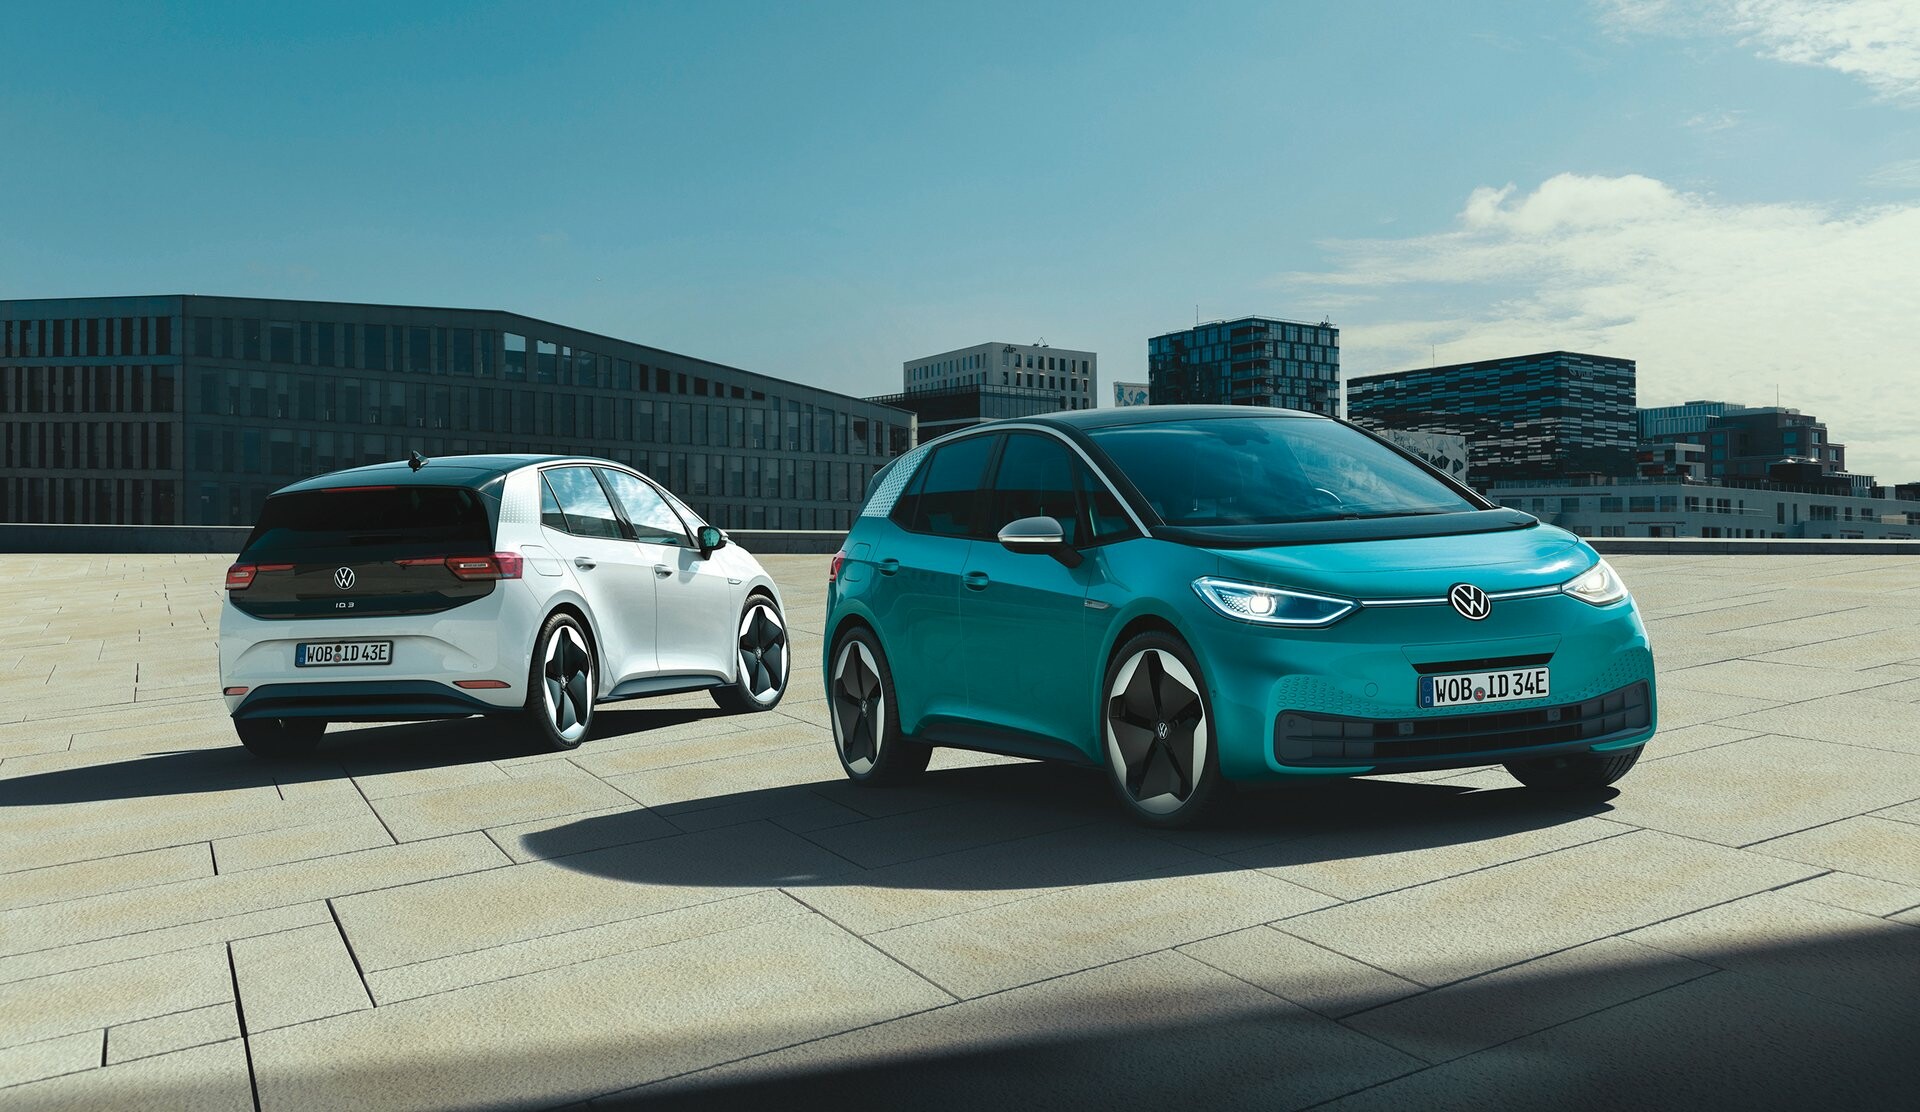 Η Volkswagen μας καλωσορίζει στην εποχή της ηλεκτροκίνησης